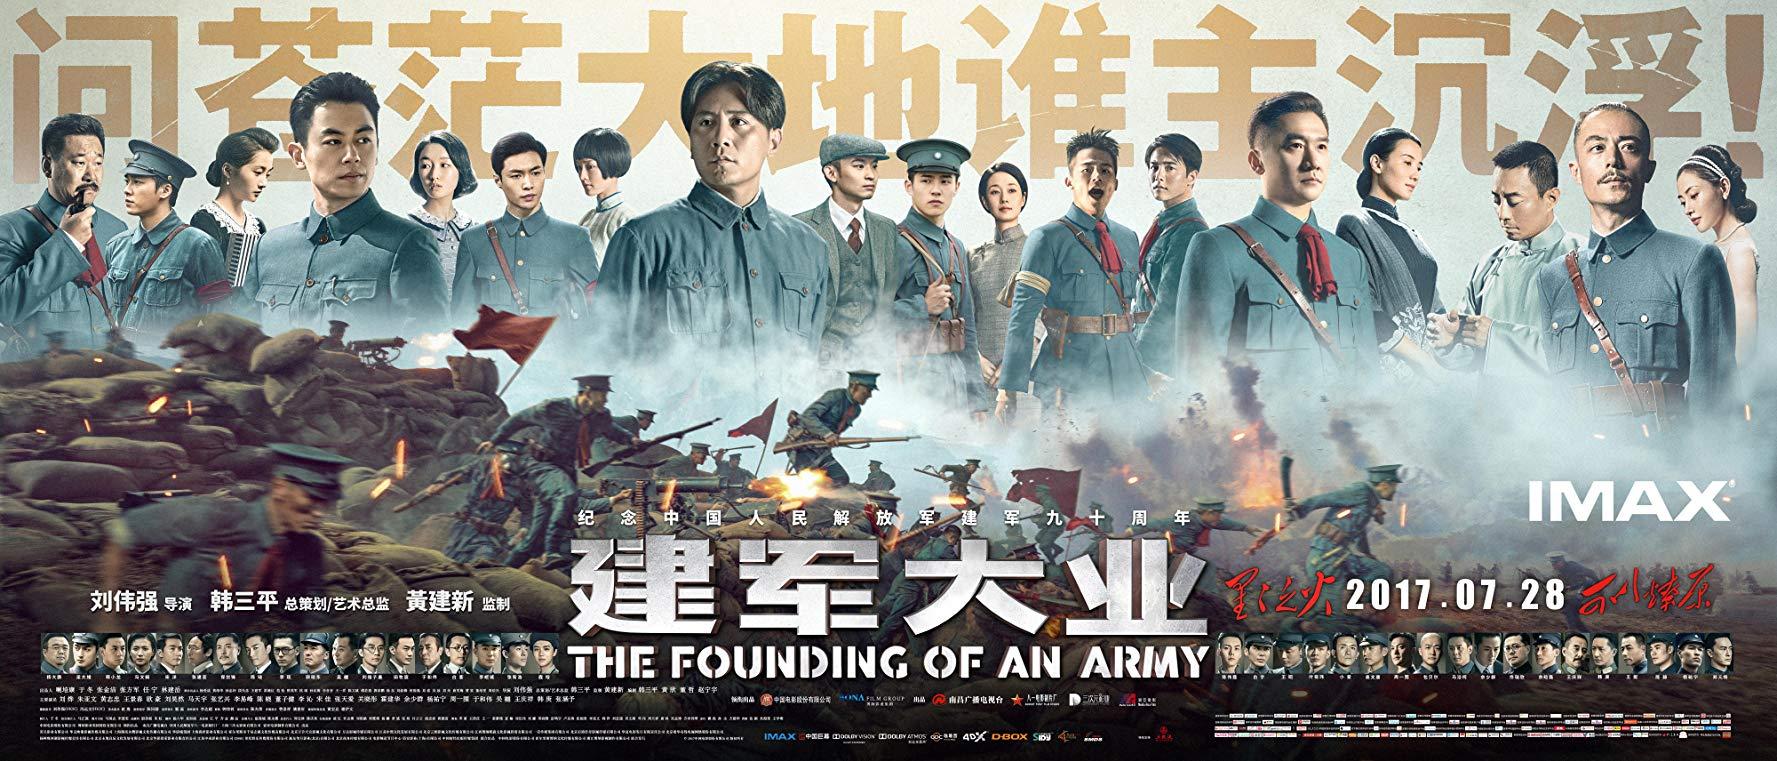 مشاهدة فيلم The Founding of an Army (2017) مترجم HD اون لاين